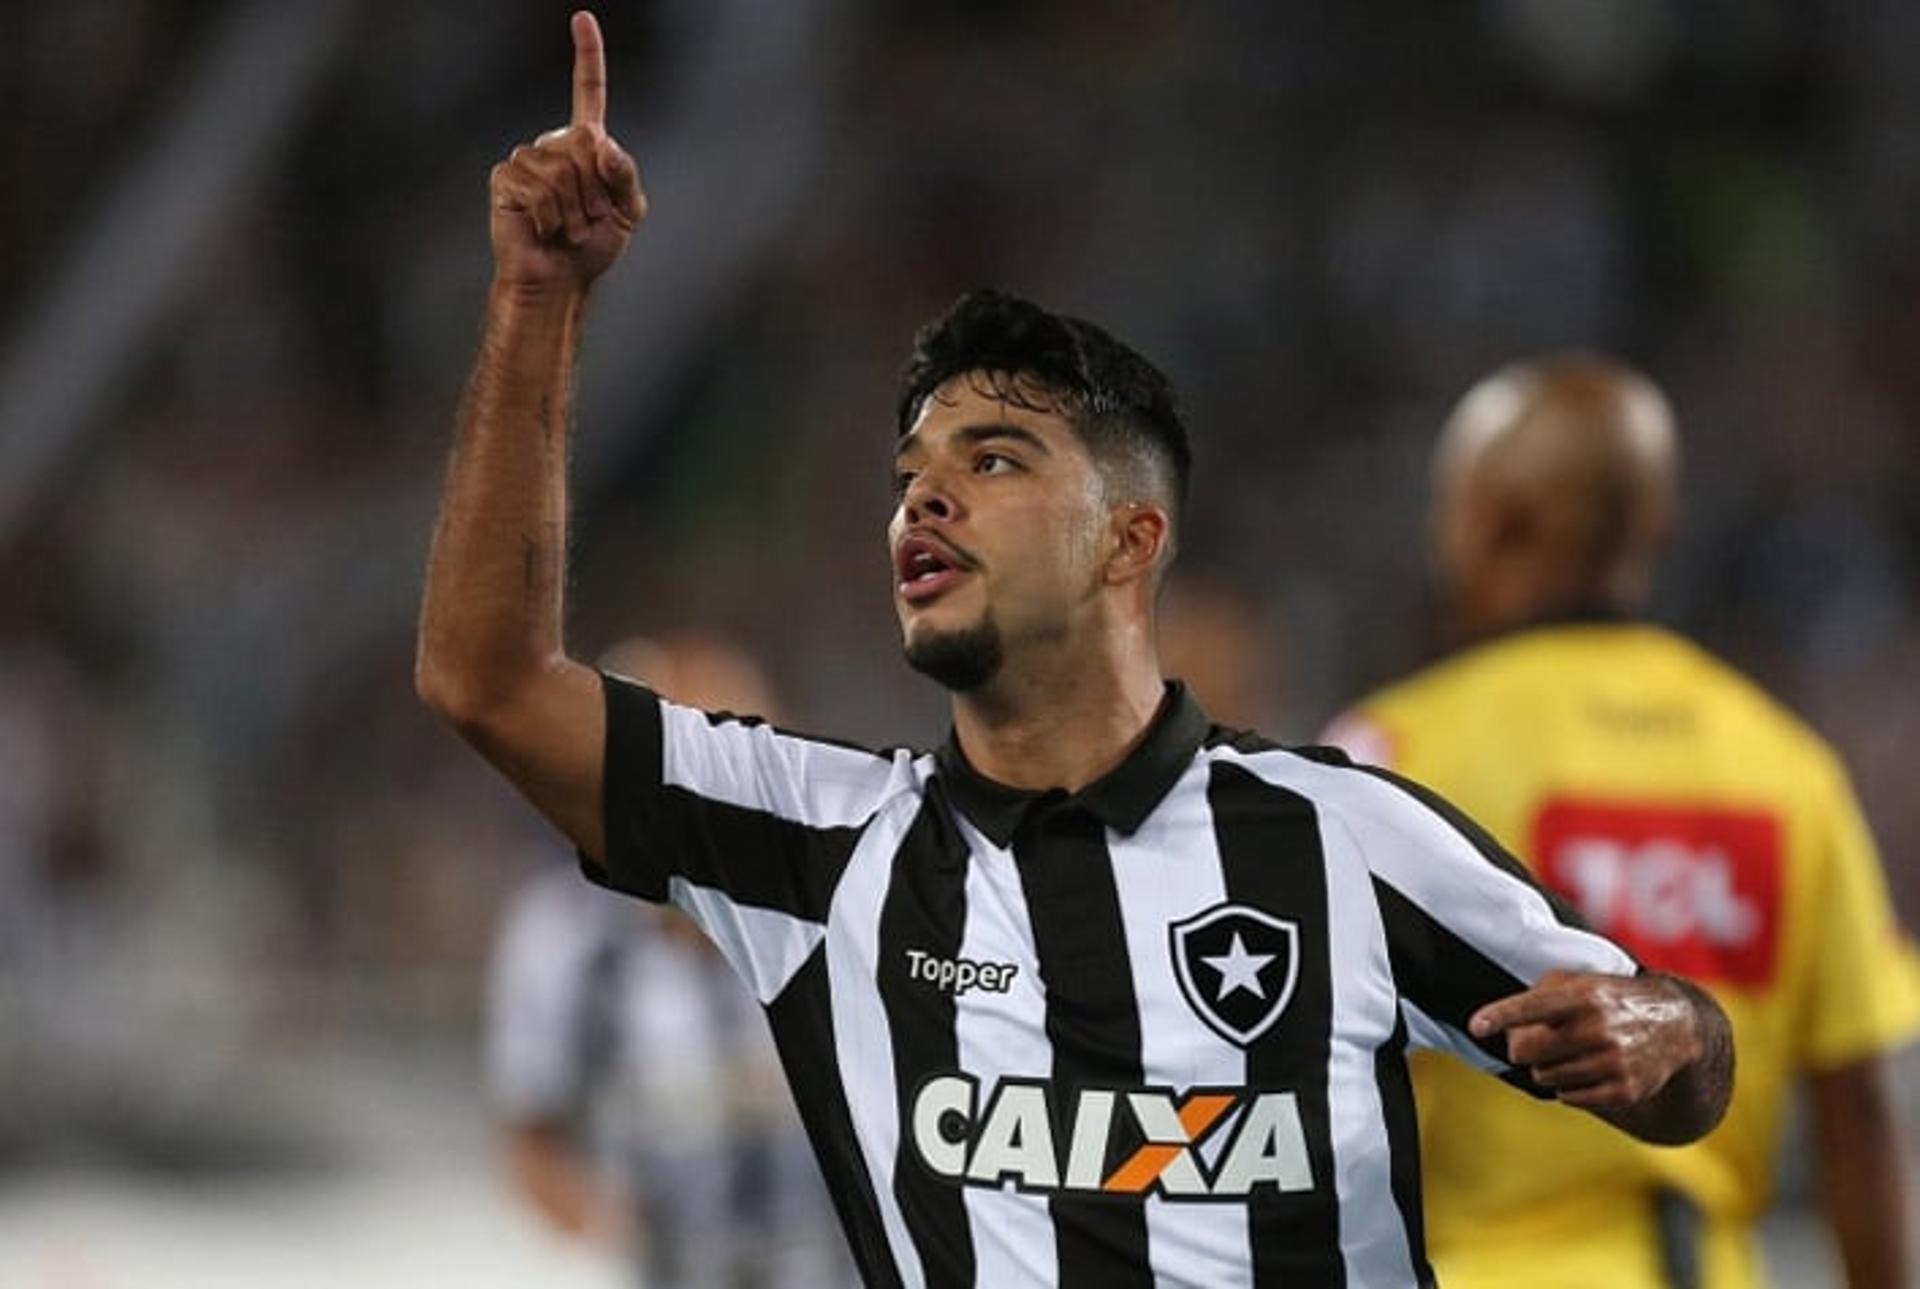 Leandrinho Botafogo